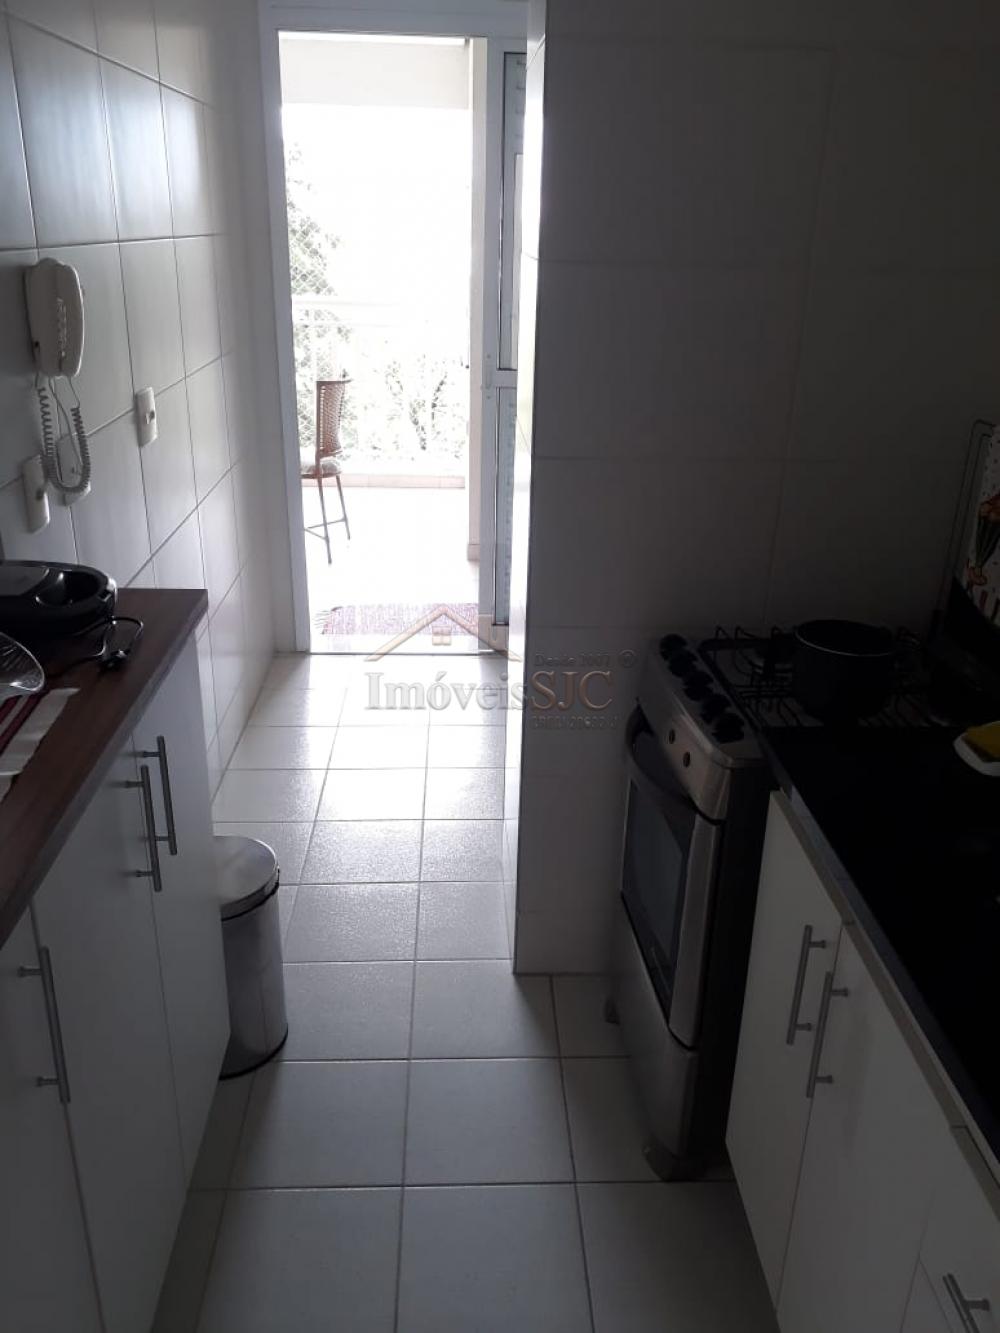 Alugar Apartamentos / Padrão em São José dos Campos R$ 2.700,00 - Foto 6